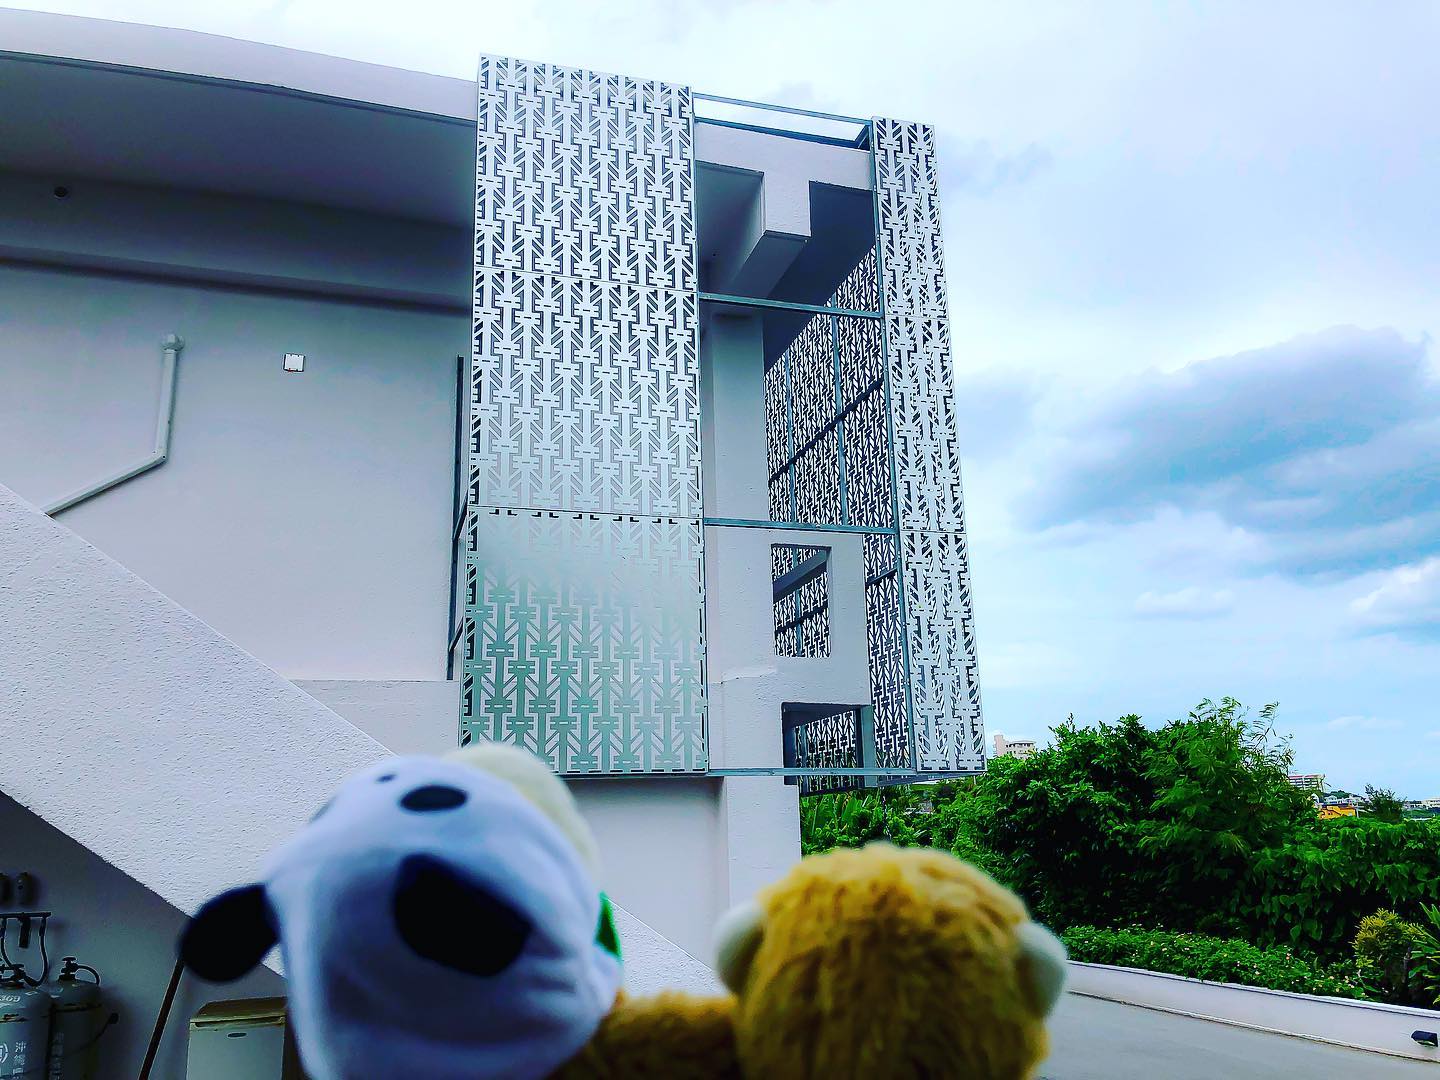 今日の進捗〜️今日は台風で壊れて飛びそうになっていた危険なデザインパネルを撤去️来週までには新しいのをはめ込む予定早く元どうりにしたいなぁ〜ＨＰhttp://hotel-monkeys.fanTwitterhttps://twitter.com/_monkeeeeeys...#沖縄のインフルエンサーになりたい#コスプレがいちばん多いホテル#ノリのホテル#MONKEYS#HOTELMONKEYS#hotel#ホテル#okinawa#沖縄#期間限定#グランドオープン#沖縄グルメ#レジャーホテル#今だけ#限定#sky#インスタ映え#ばえスポット#幸せ時間#ラブホテル#沖縄市#沖縄市ラブホテル#楽しい時間#モンキーズホテル#ホテルモンキーズ#モンキーズ#セール#monkeyshotel